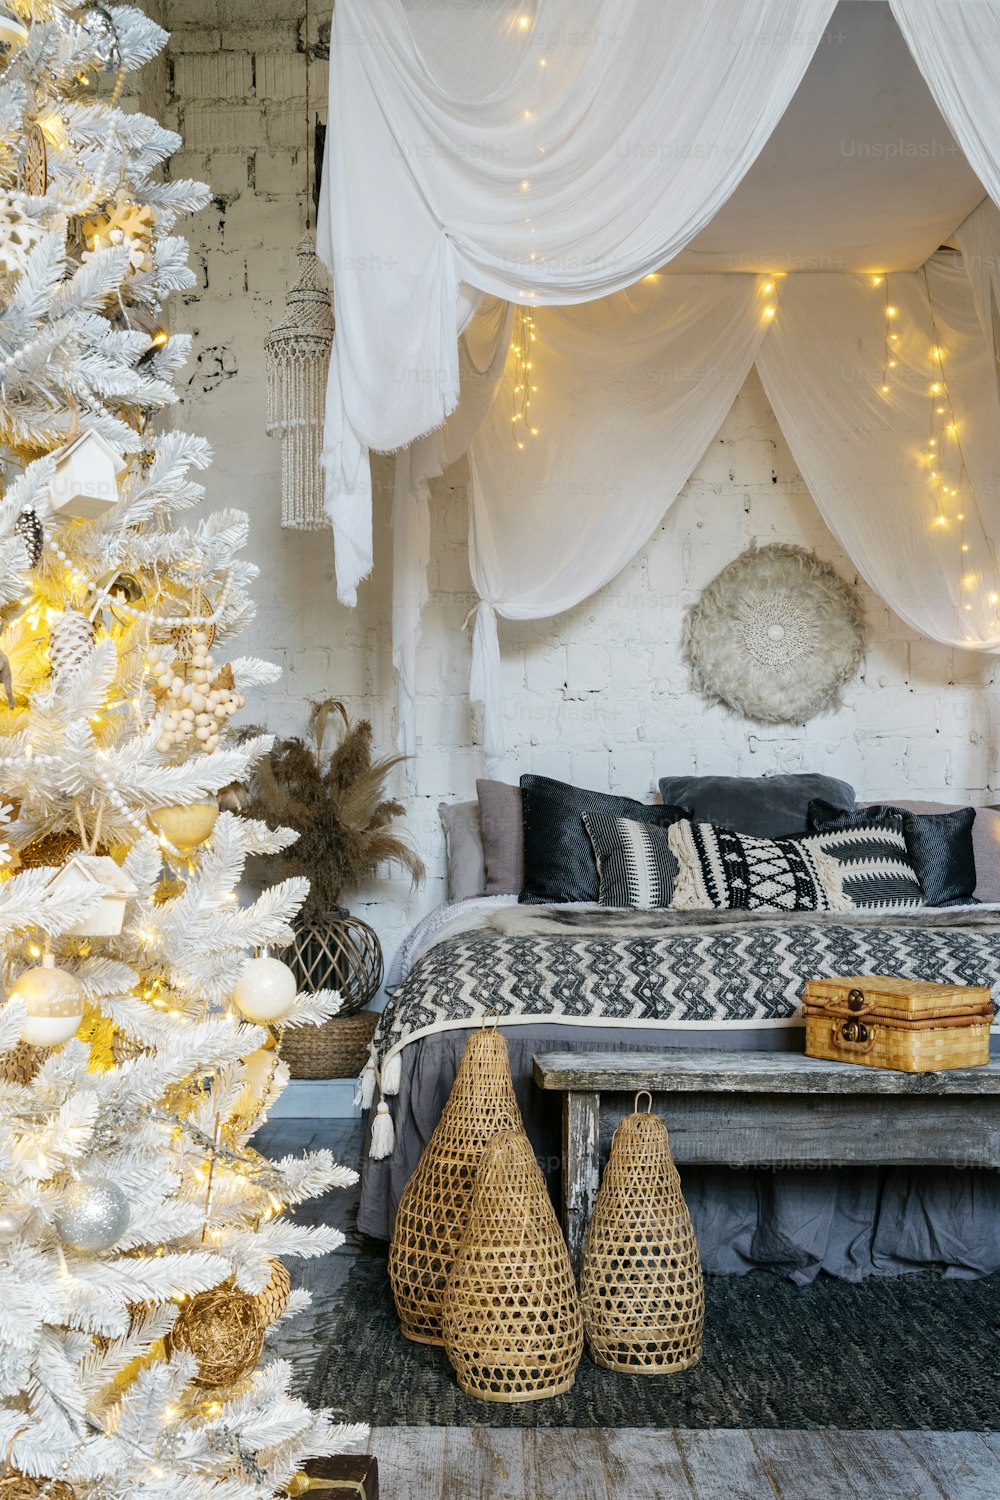 Foto vertical de un dormitorio acogedor en un interior de estilo boho con cama cómoda, cuadros, almohadas y manta, asiento de banco de madera y decoración del hogar cerca del árbol de Navidad decorado